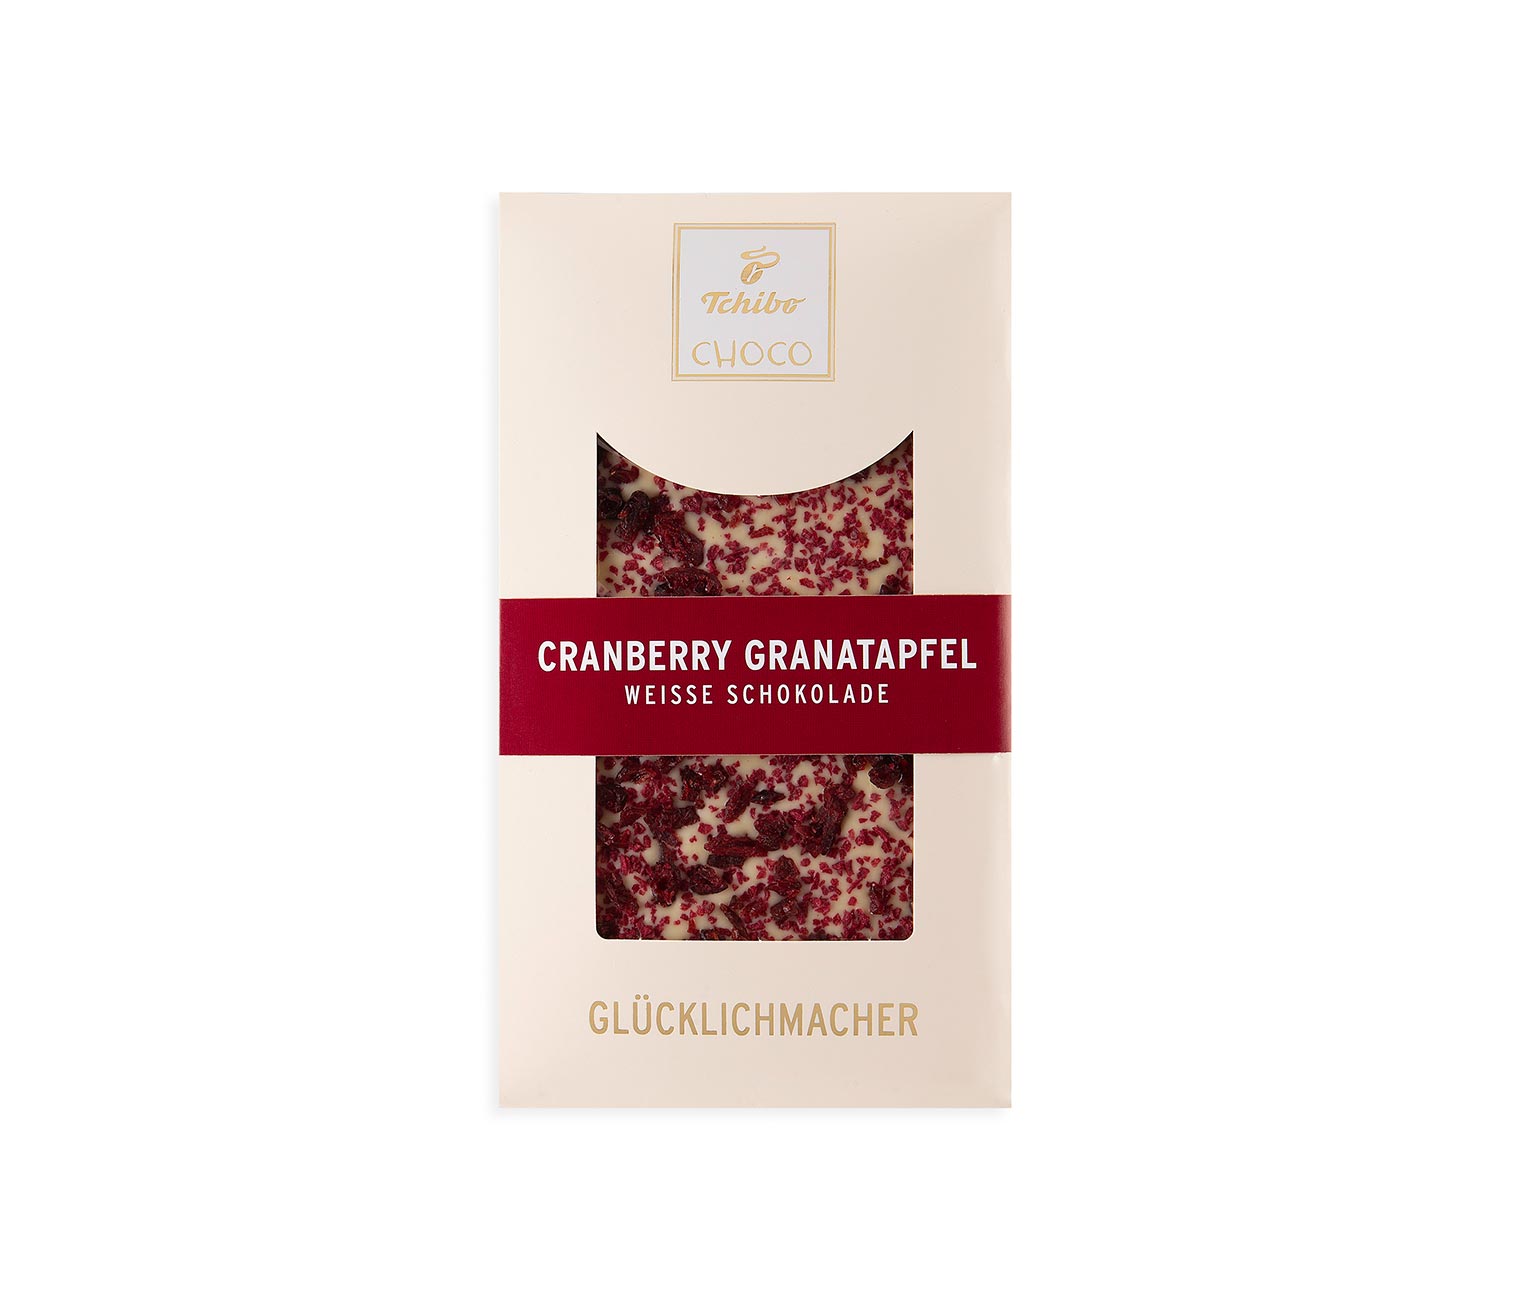 Cranberry Granatapfel Weiße Schokolade online bestellen bei Tchibo 512952